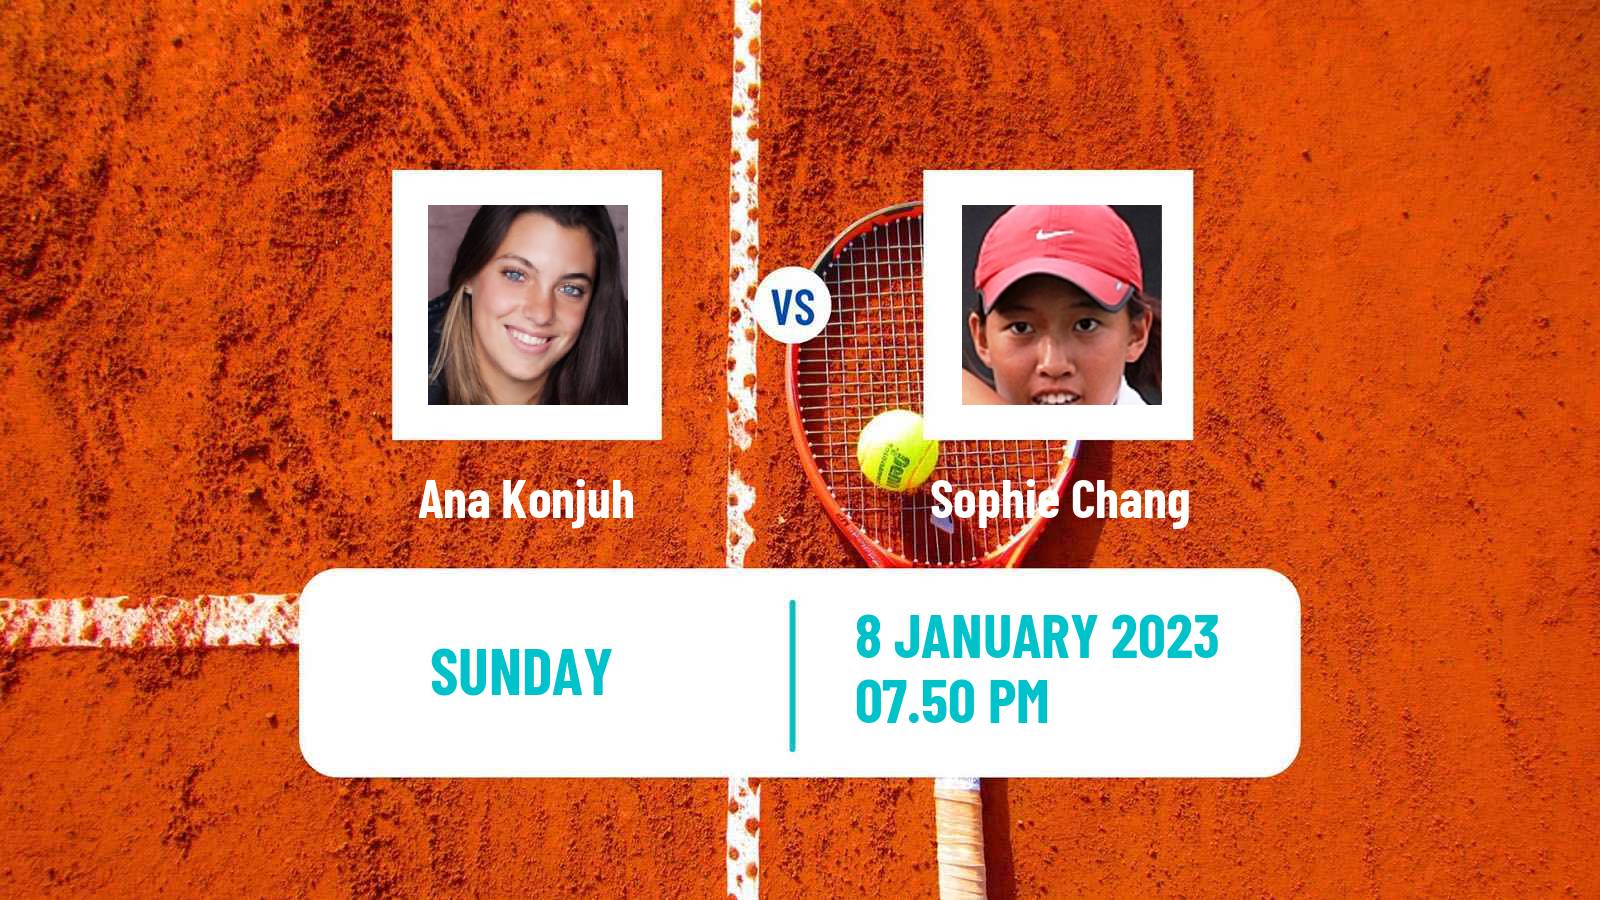 Tennis WTA Australian Open Ana Konjuh - Sophie Chang